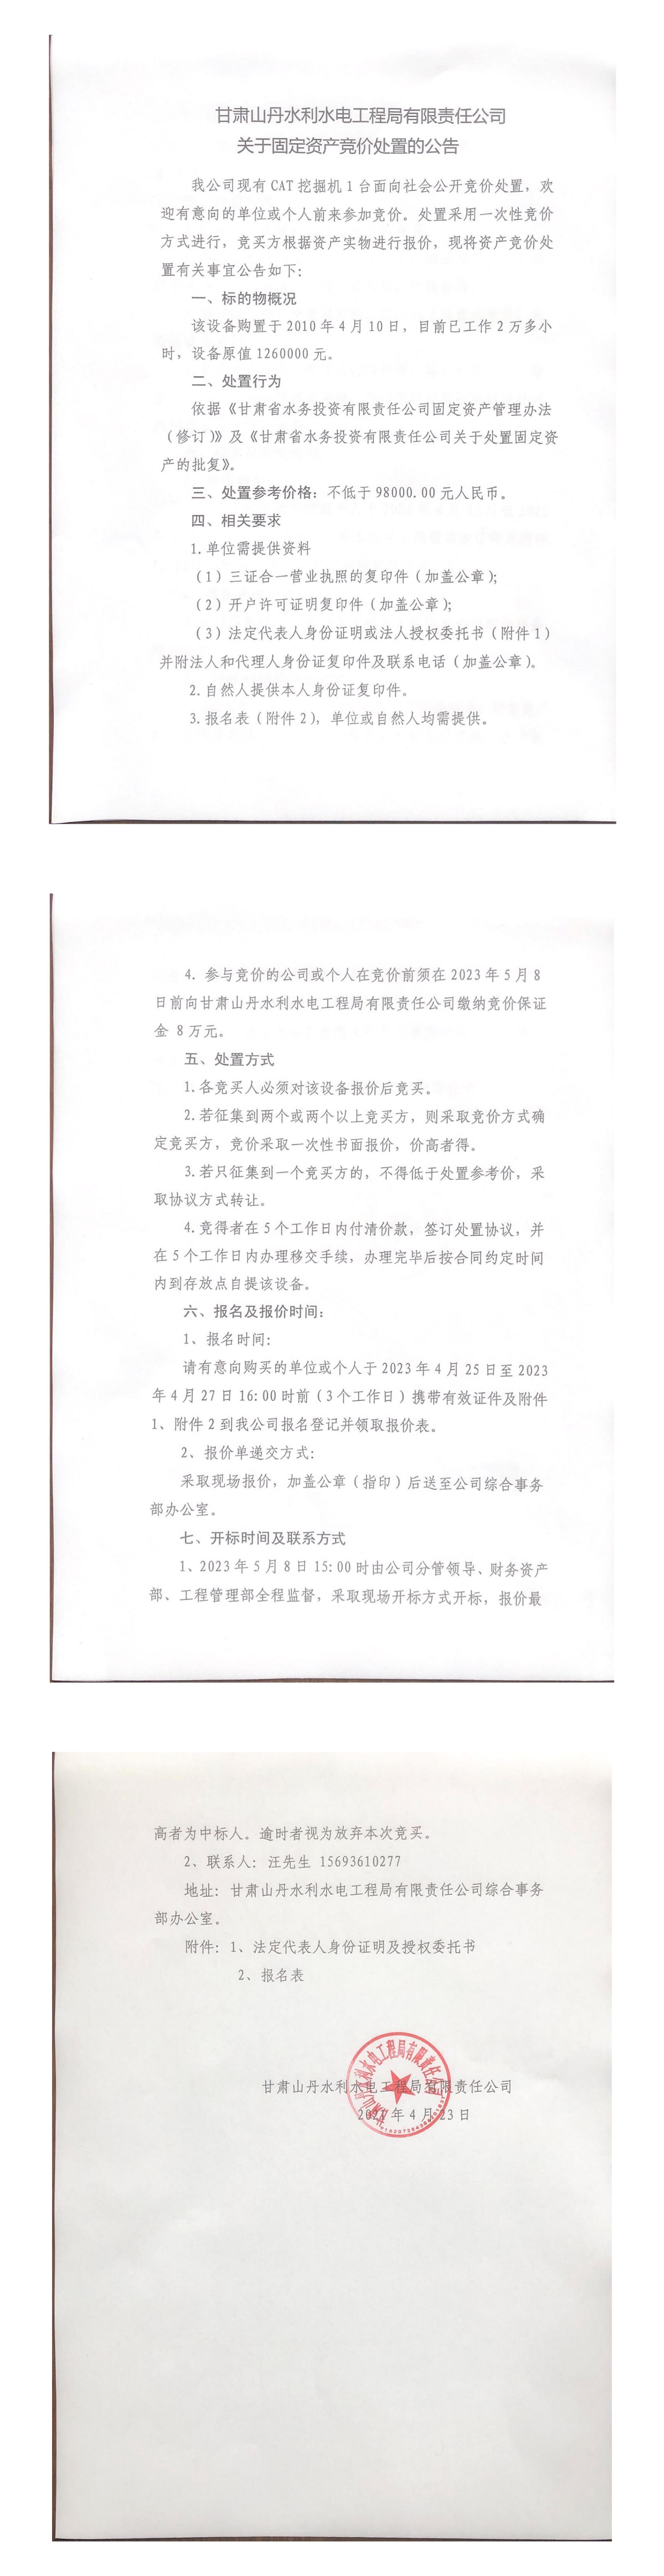 甘肃山丹水利水电工程局有限责任公司关于固定资产竞价处置的公告.jpg